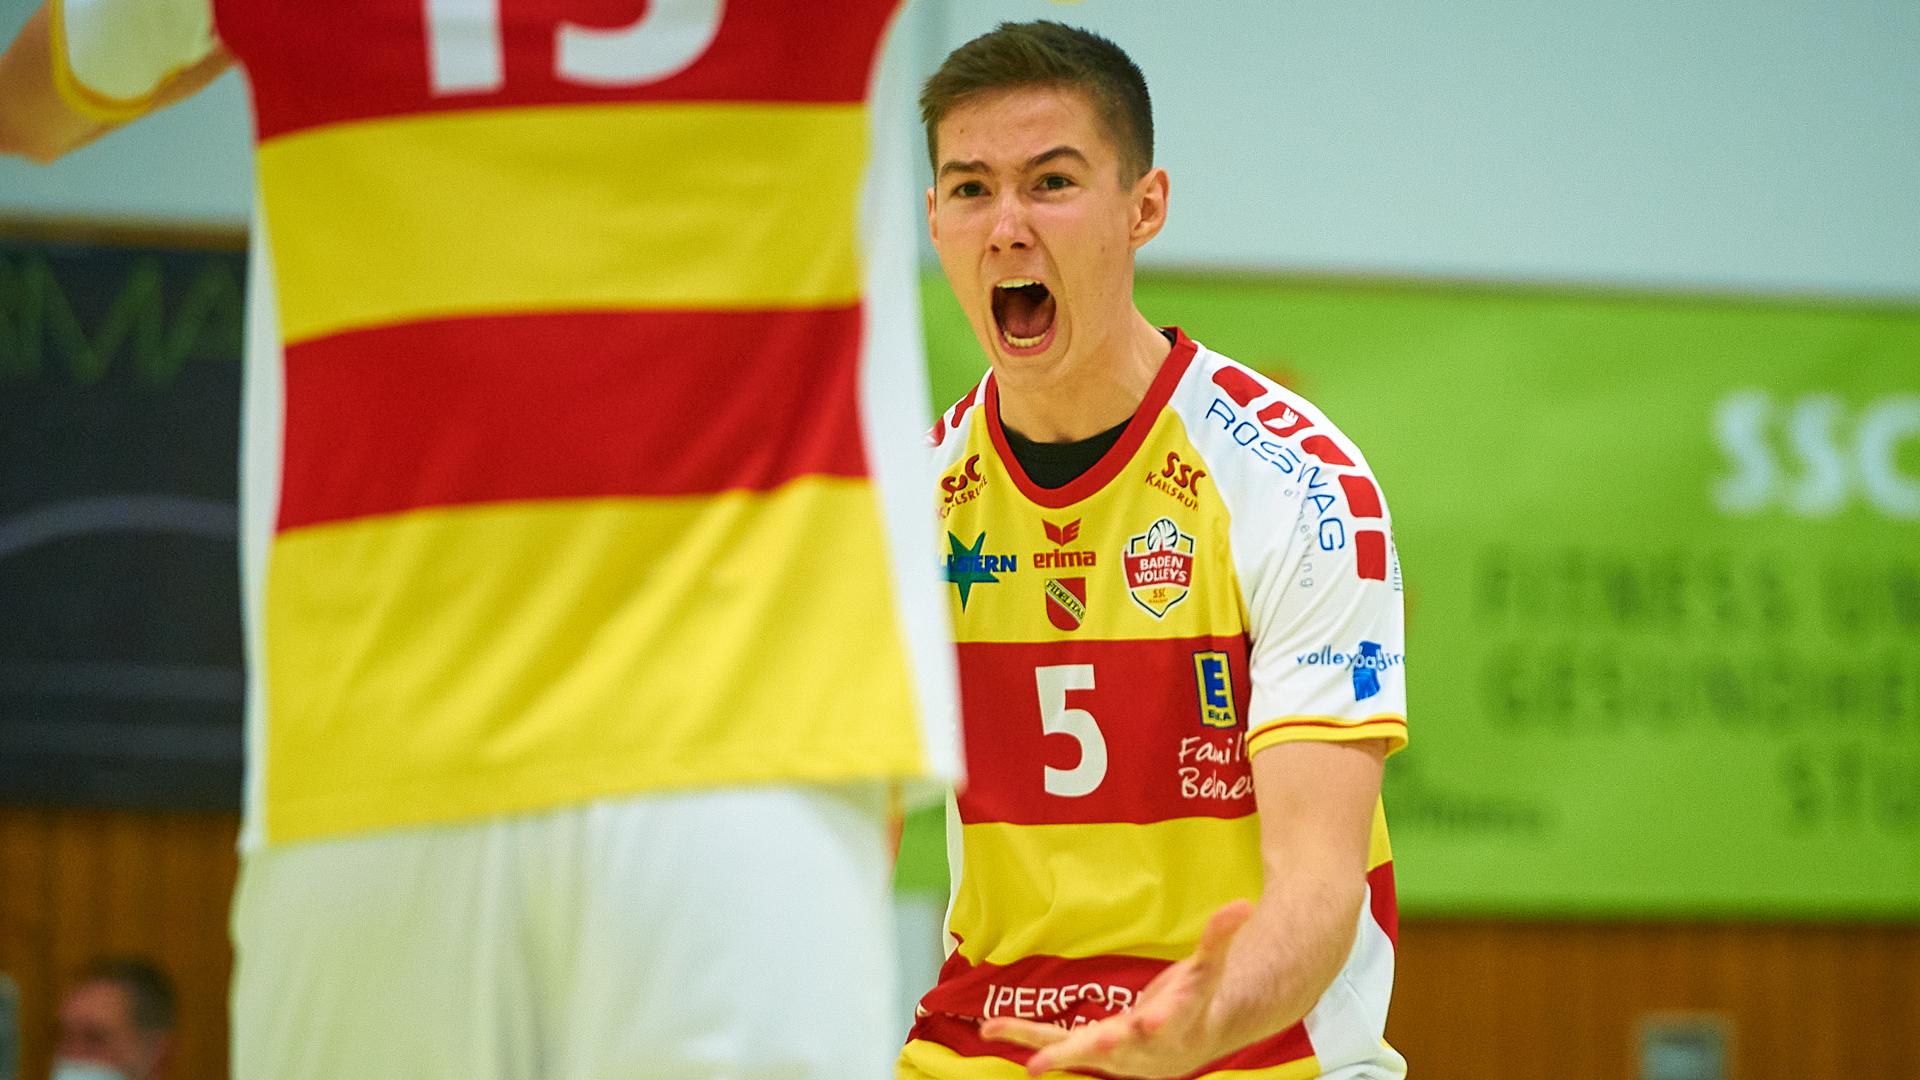 Starkes erstes Halbjahr: Volleys-Neuzugang Denir Hadzic (19) überzeugte als Stammzuspieler in der Regionalligamannschaft und feierte auch einige Einsätze für das Zweitliga-Team der Karlsruher.